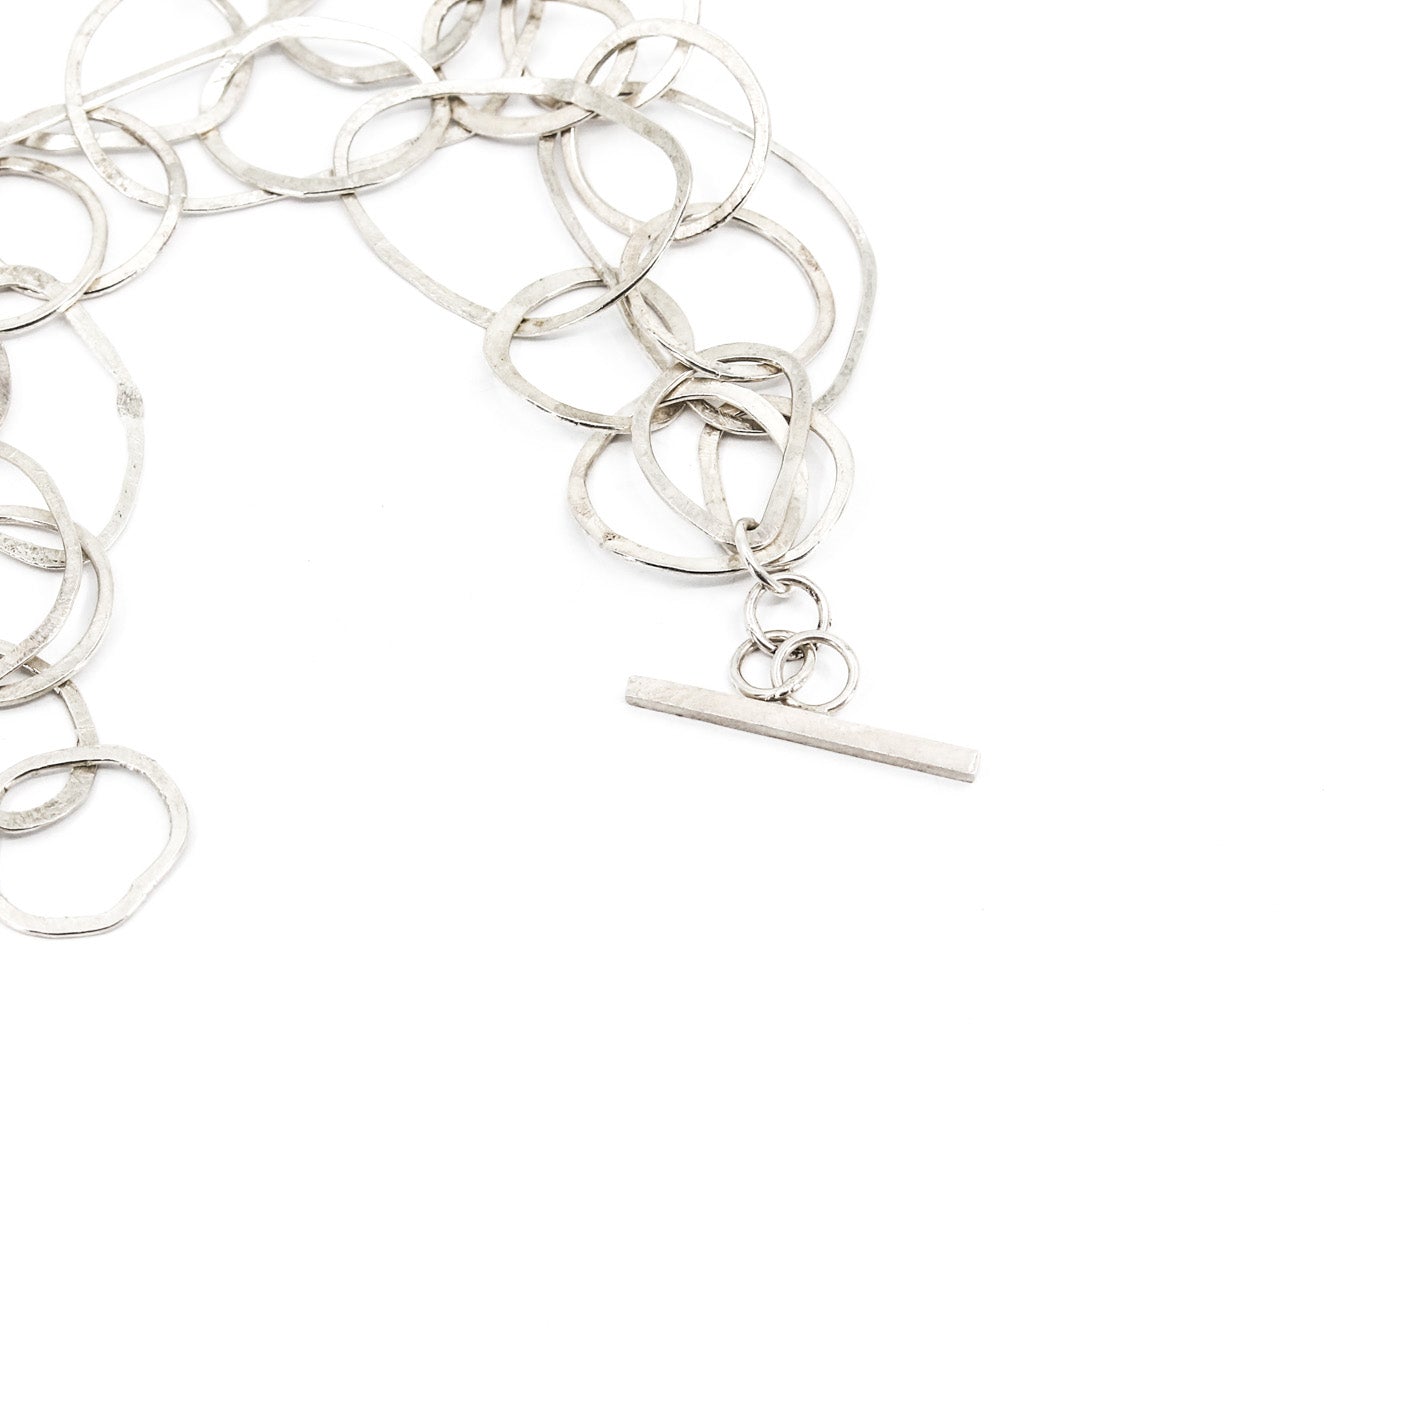 modern multi link sterling silver bracelet • hammered • handmade in France